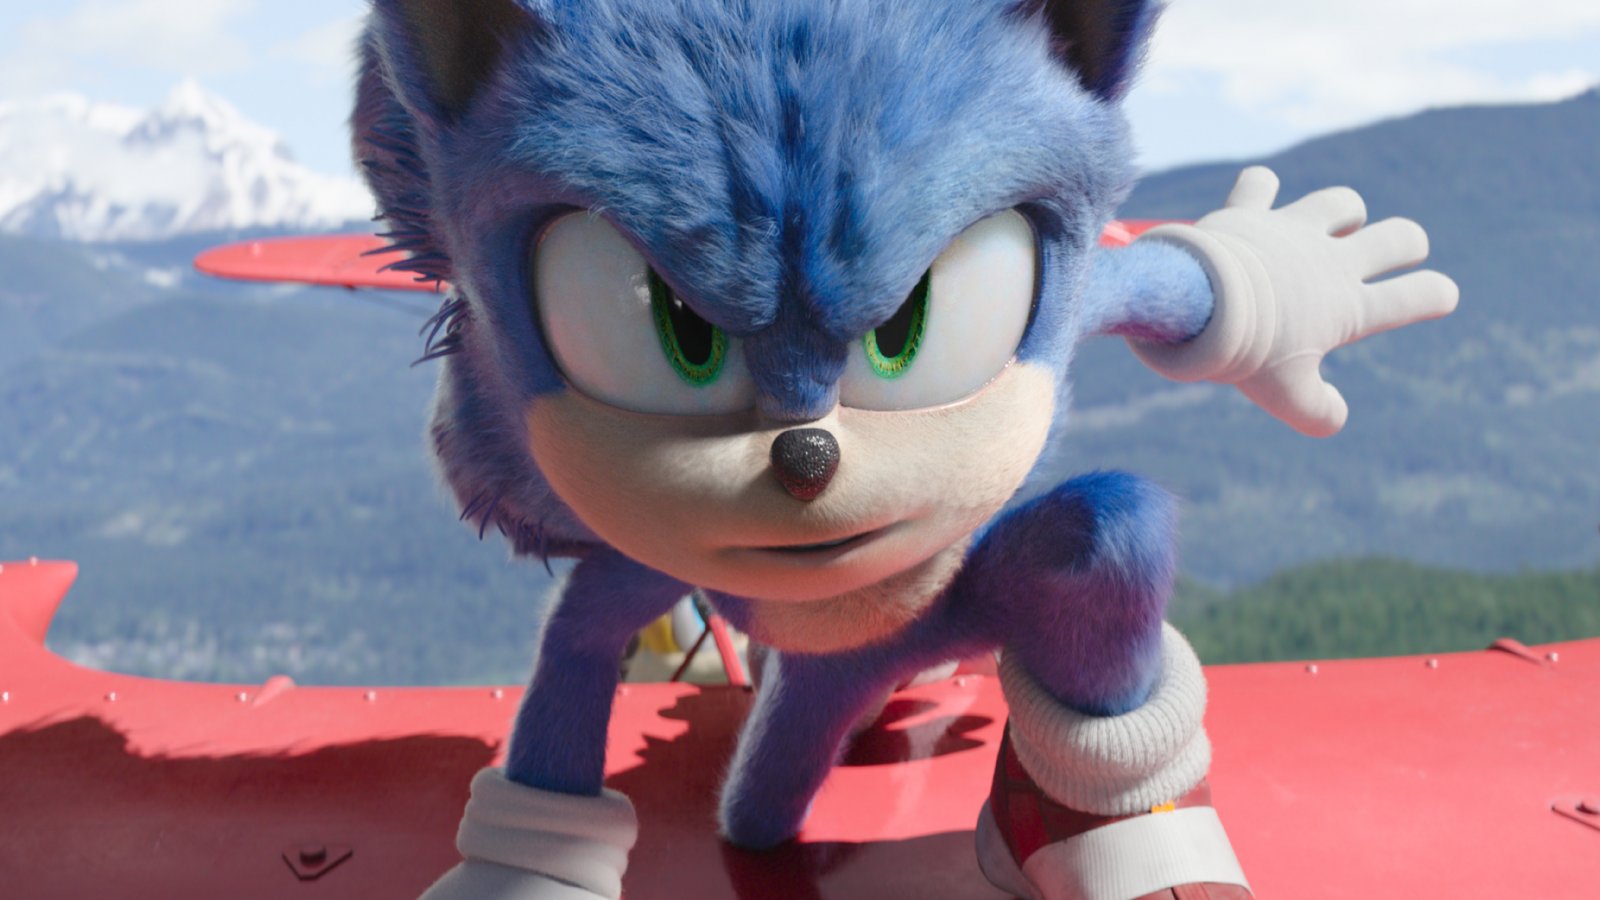 Sonic 2 sarà un'avventura 'pazza e divertente' per i fan, le prime anticipazioni sul film